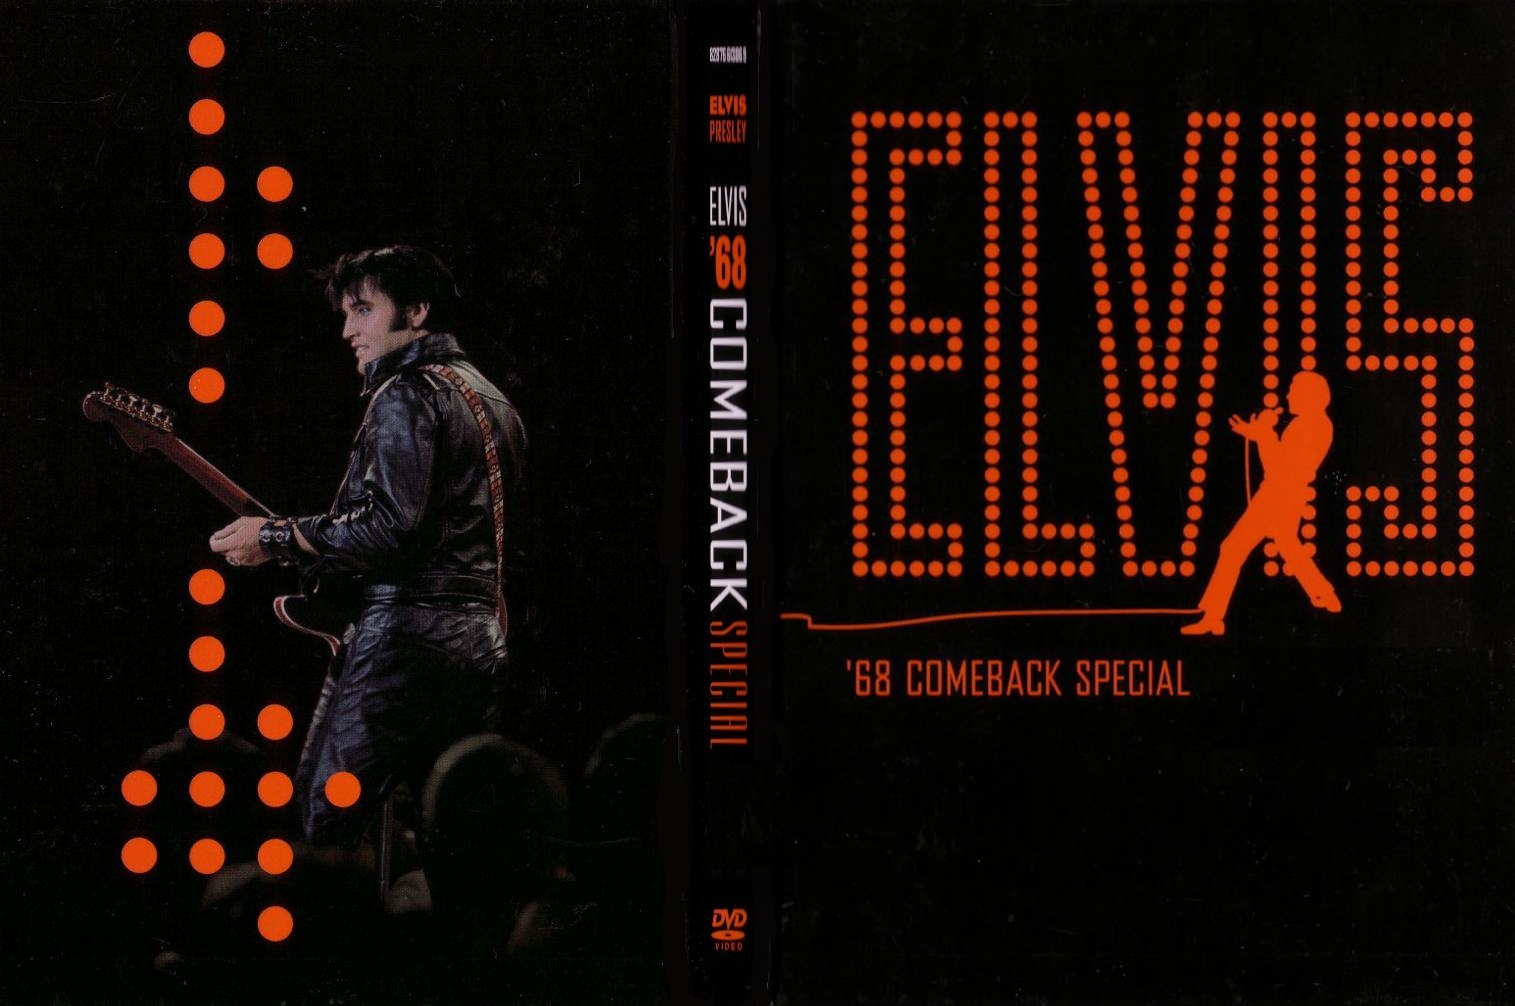 Jaquette DVD Elvis 68 Comeback special v2